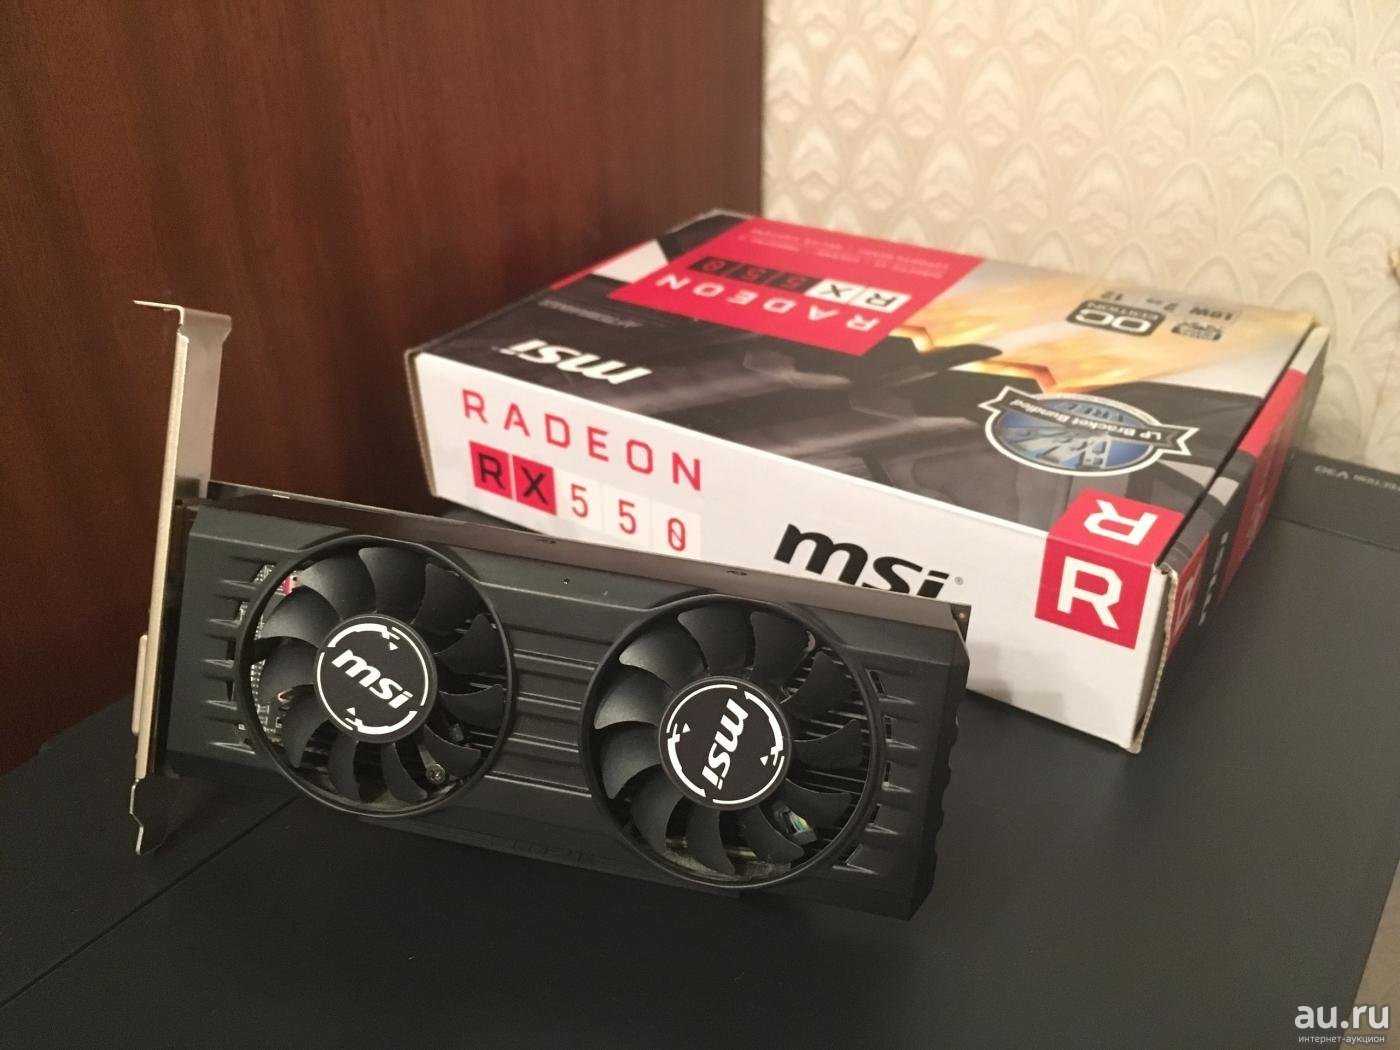 MSI Radeon RX 550 - короткий но максимально информативный обзор Для большего удобства добавлены характеристики отзывы и видео